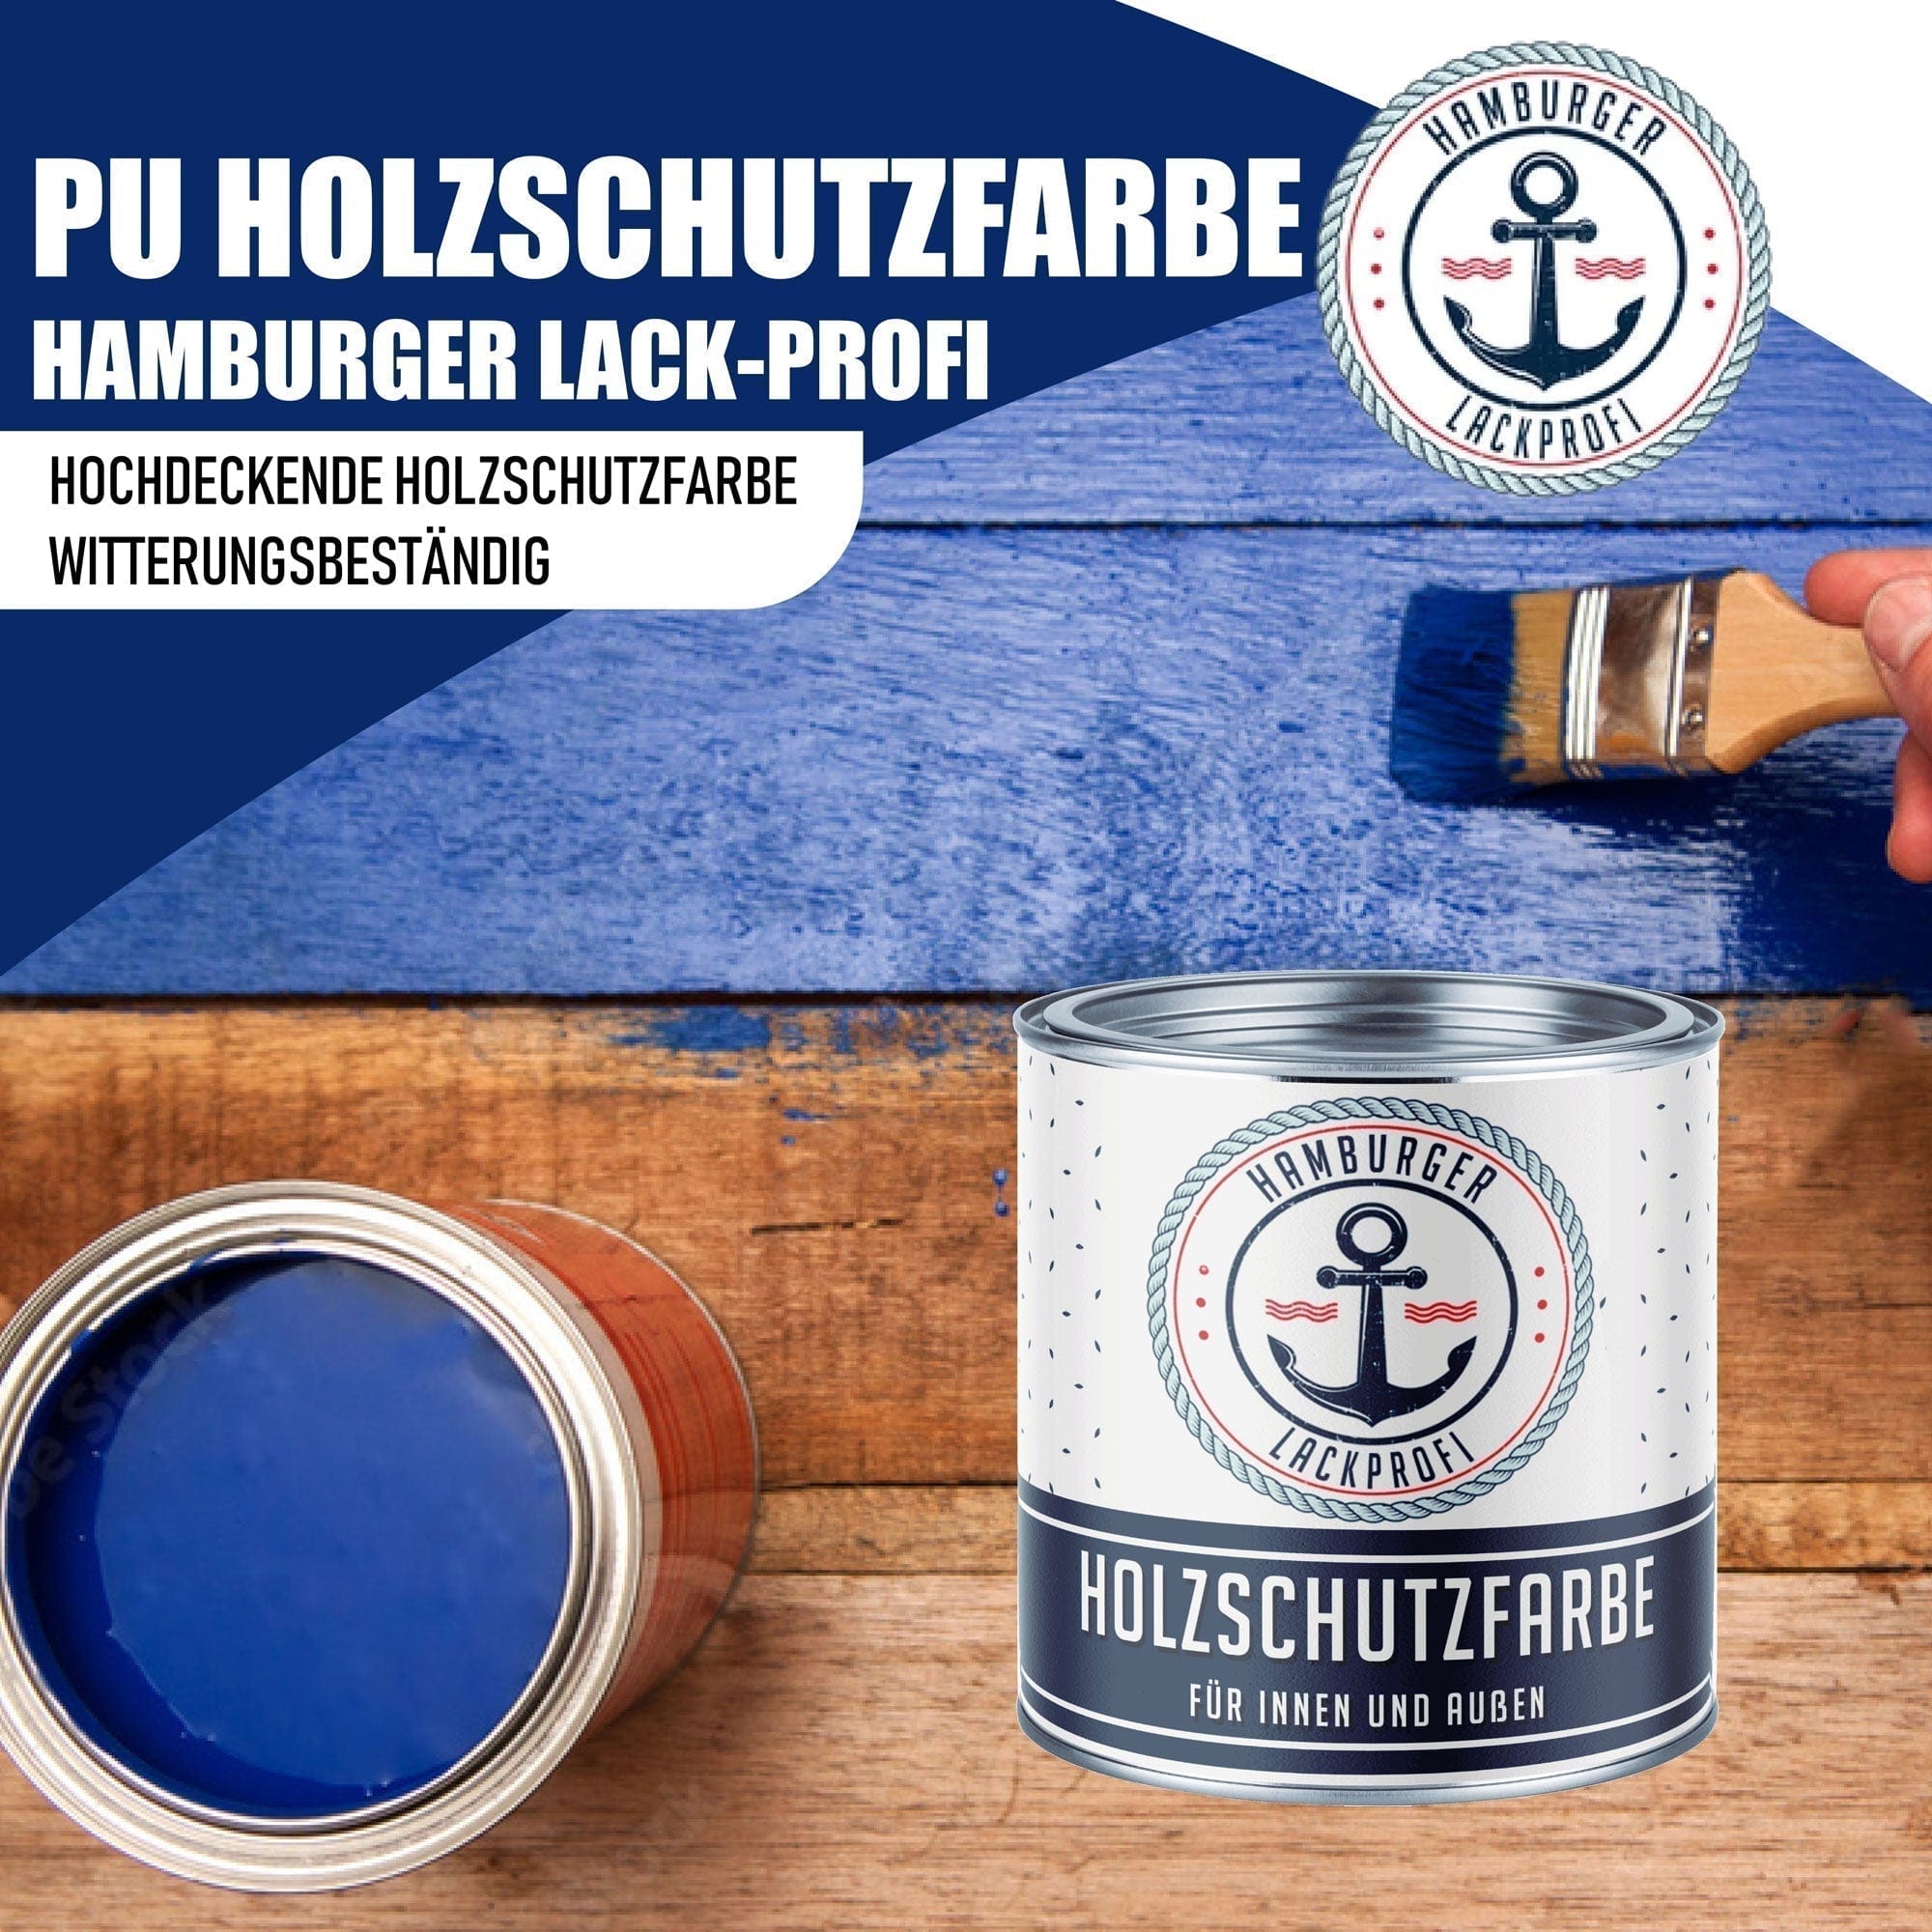 Hamburger Lack-Profi Lacke & Beschichtungen PU Holzschutzfarbe RAL 9011 Graphitschwarz - Wetterschutzfarbe